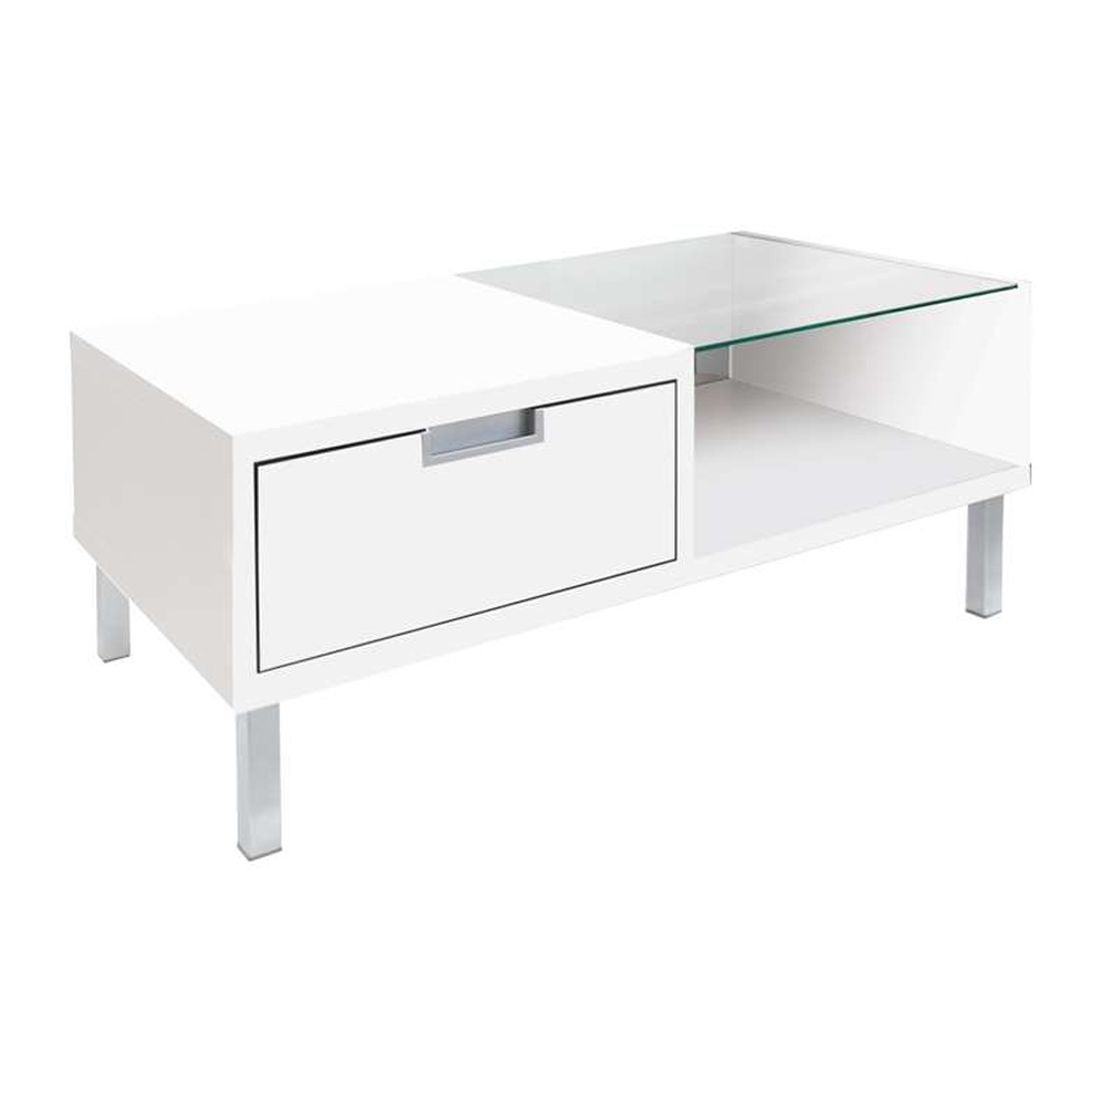 โต๊ะกลาง โต๊ะกลางไม้ท๊อปกระจก รุ่น Wish สีสีขาว-SB Design Square